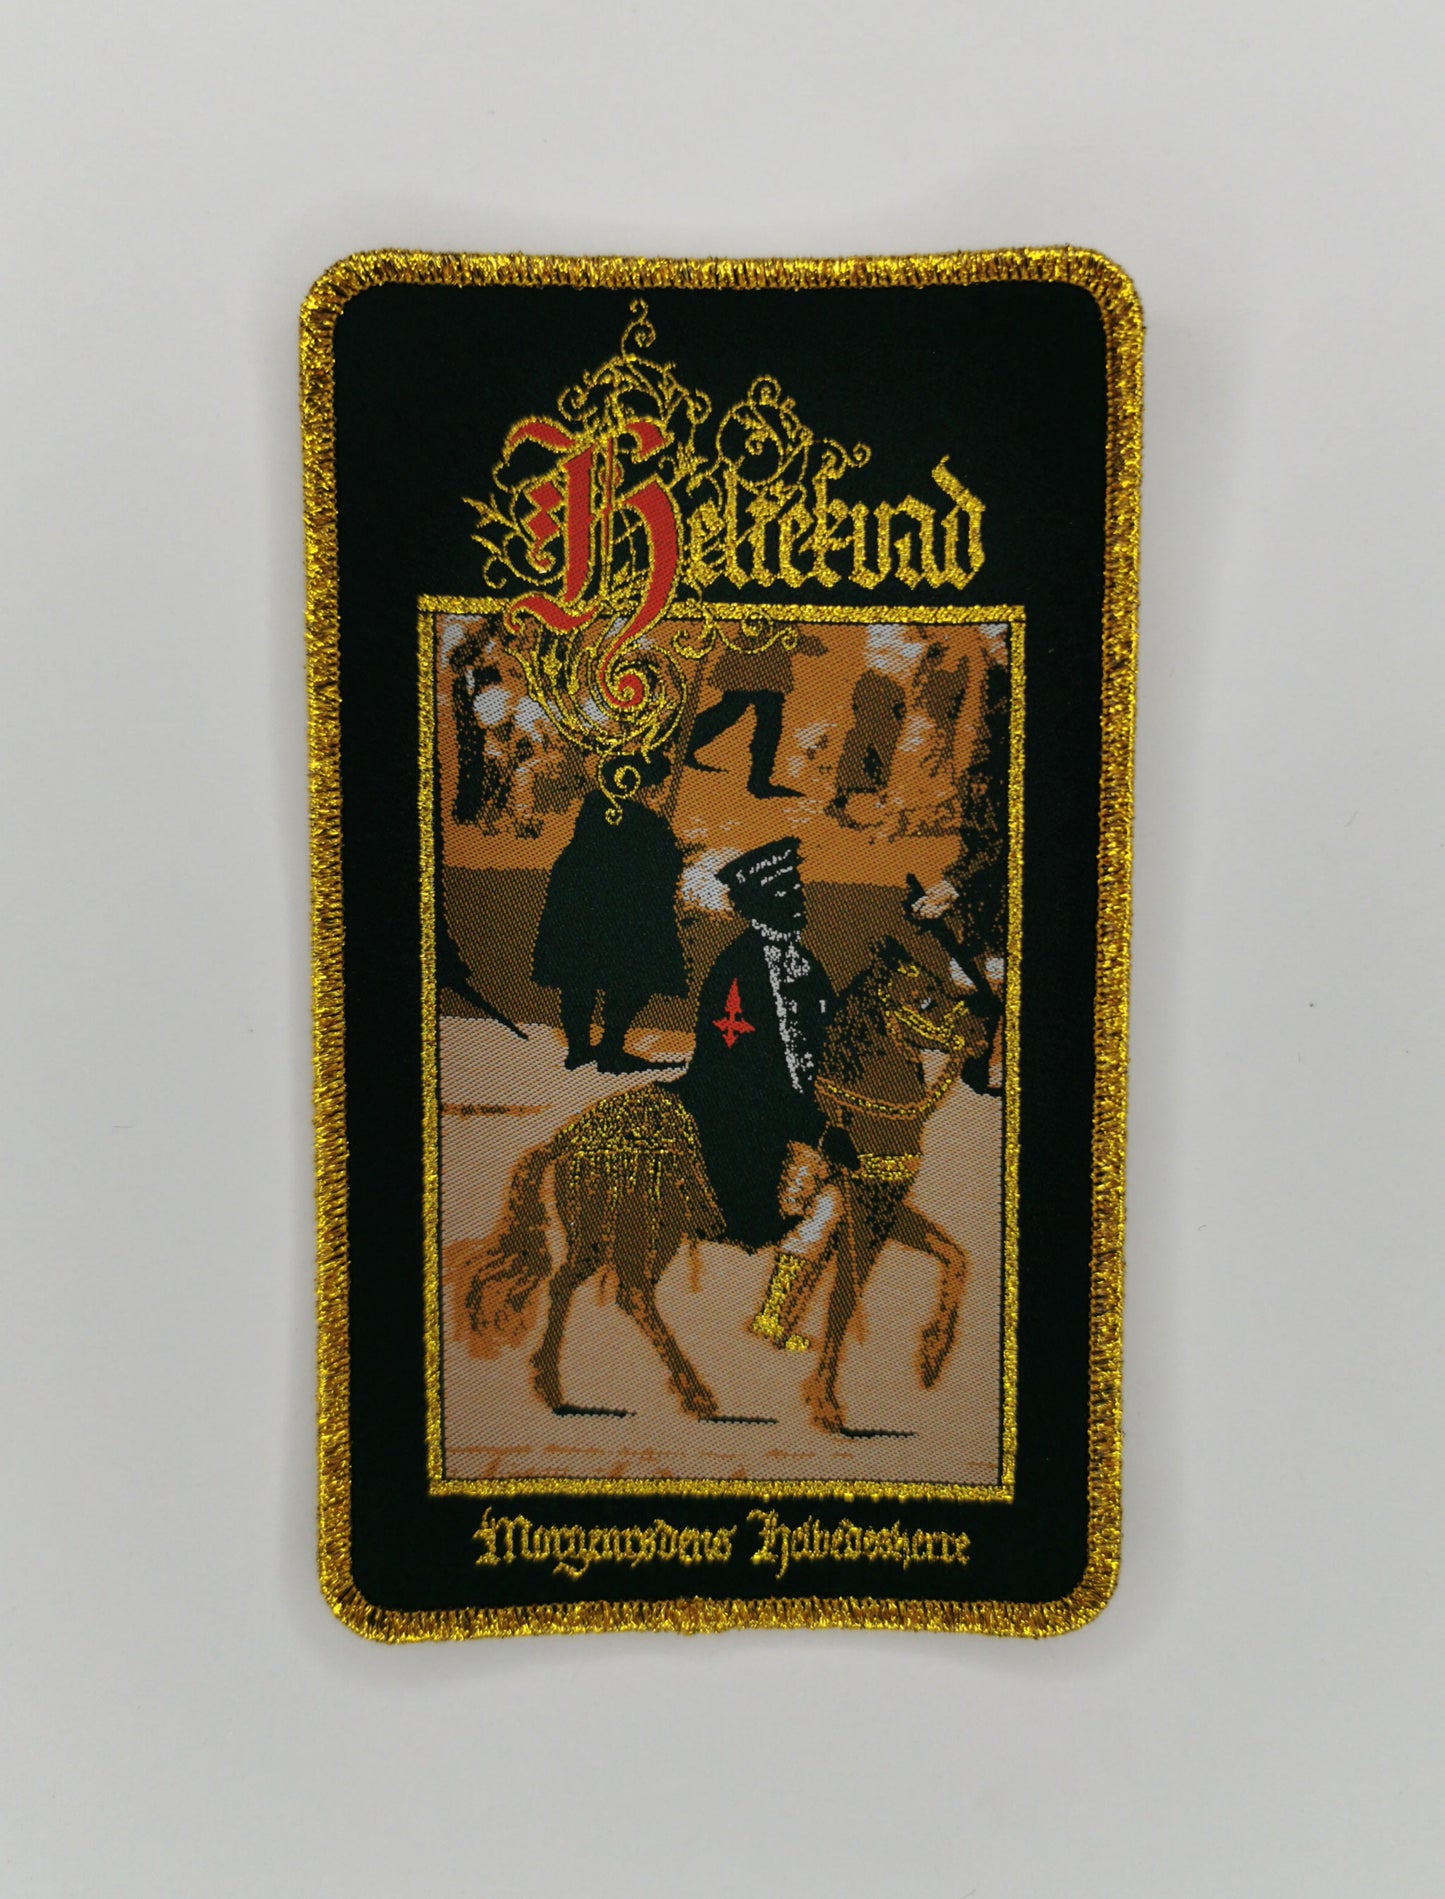 Heltekvad Morgenrødens Helvedesherre Golden Glitter Border Woven Patch Danish Medieval Black Metal